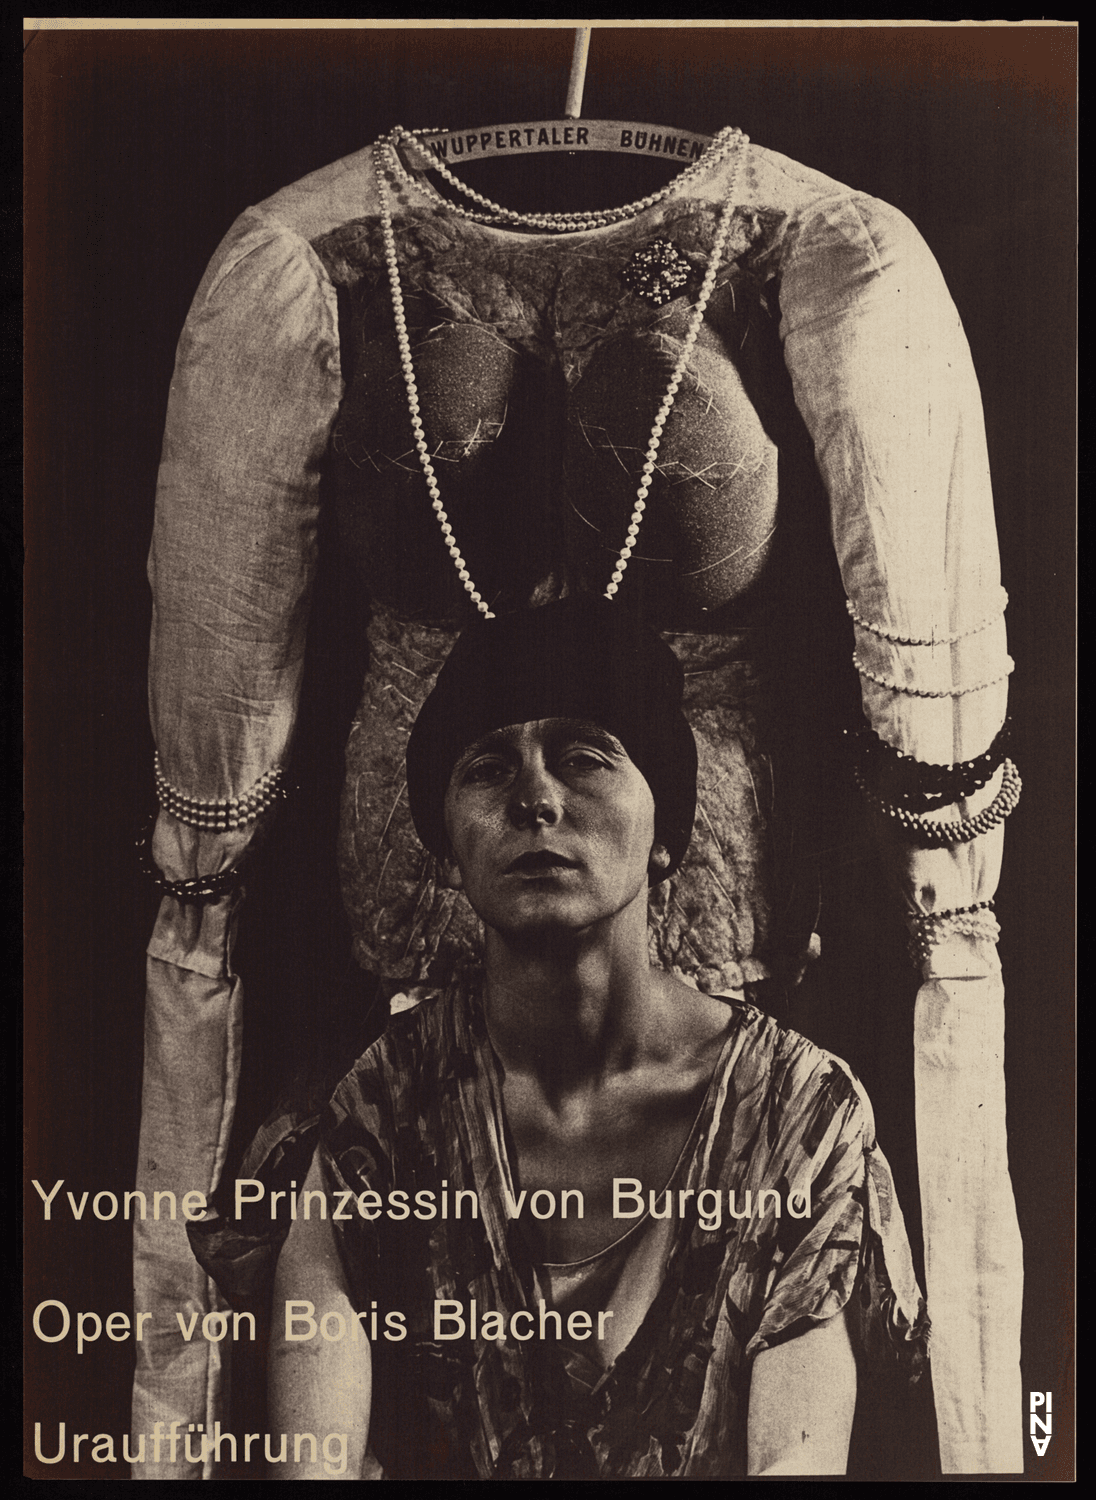 Poster for “Yvonne, Prinzessin von Burgund” by Boris Blacher in Wuppertal, Sept. 15, 1973